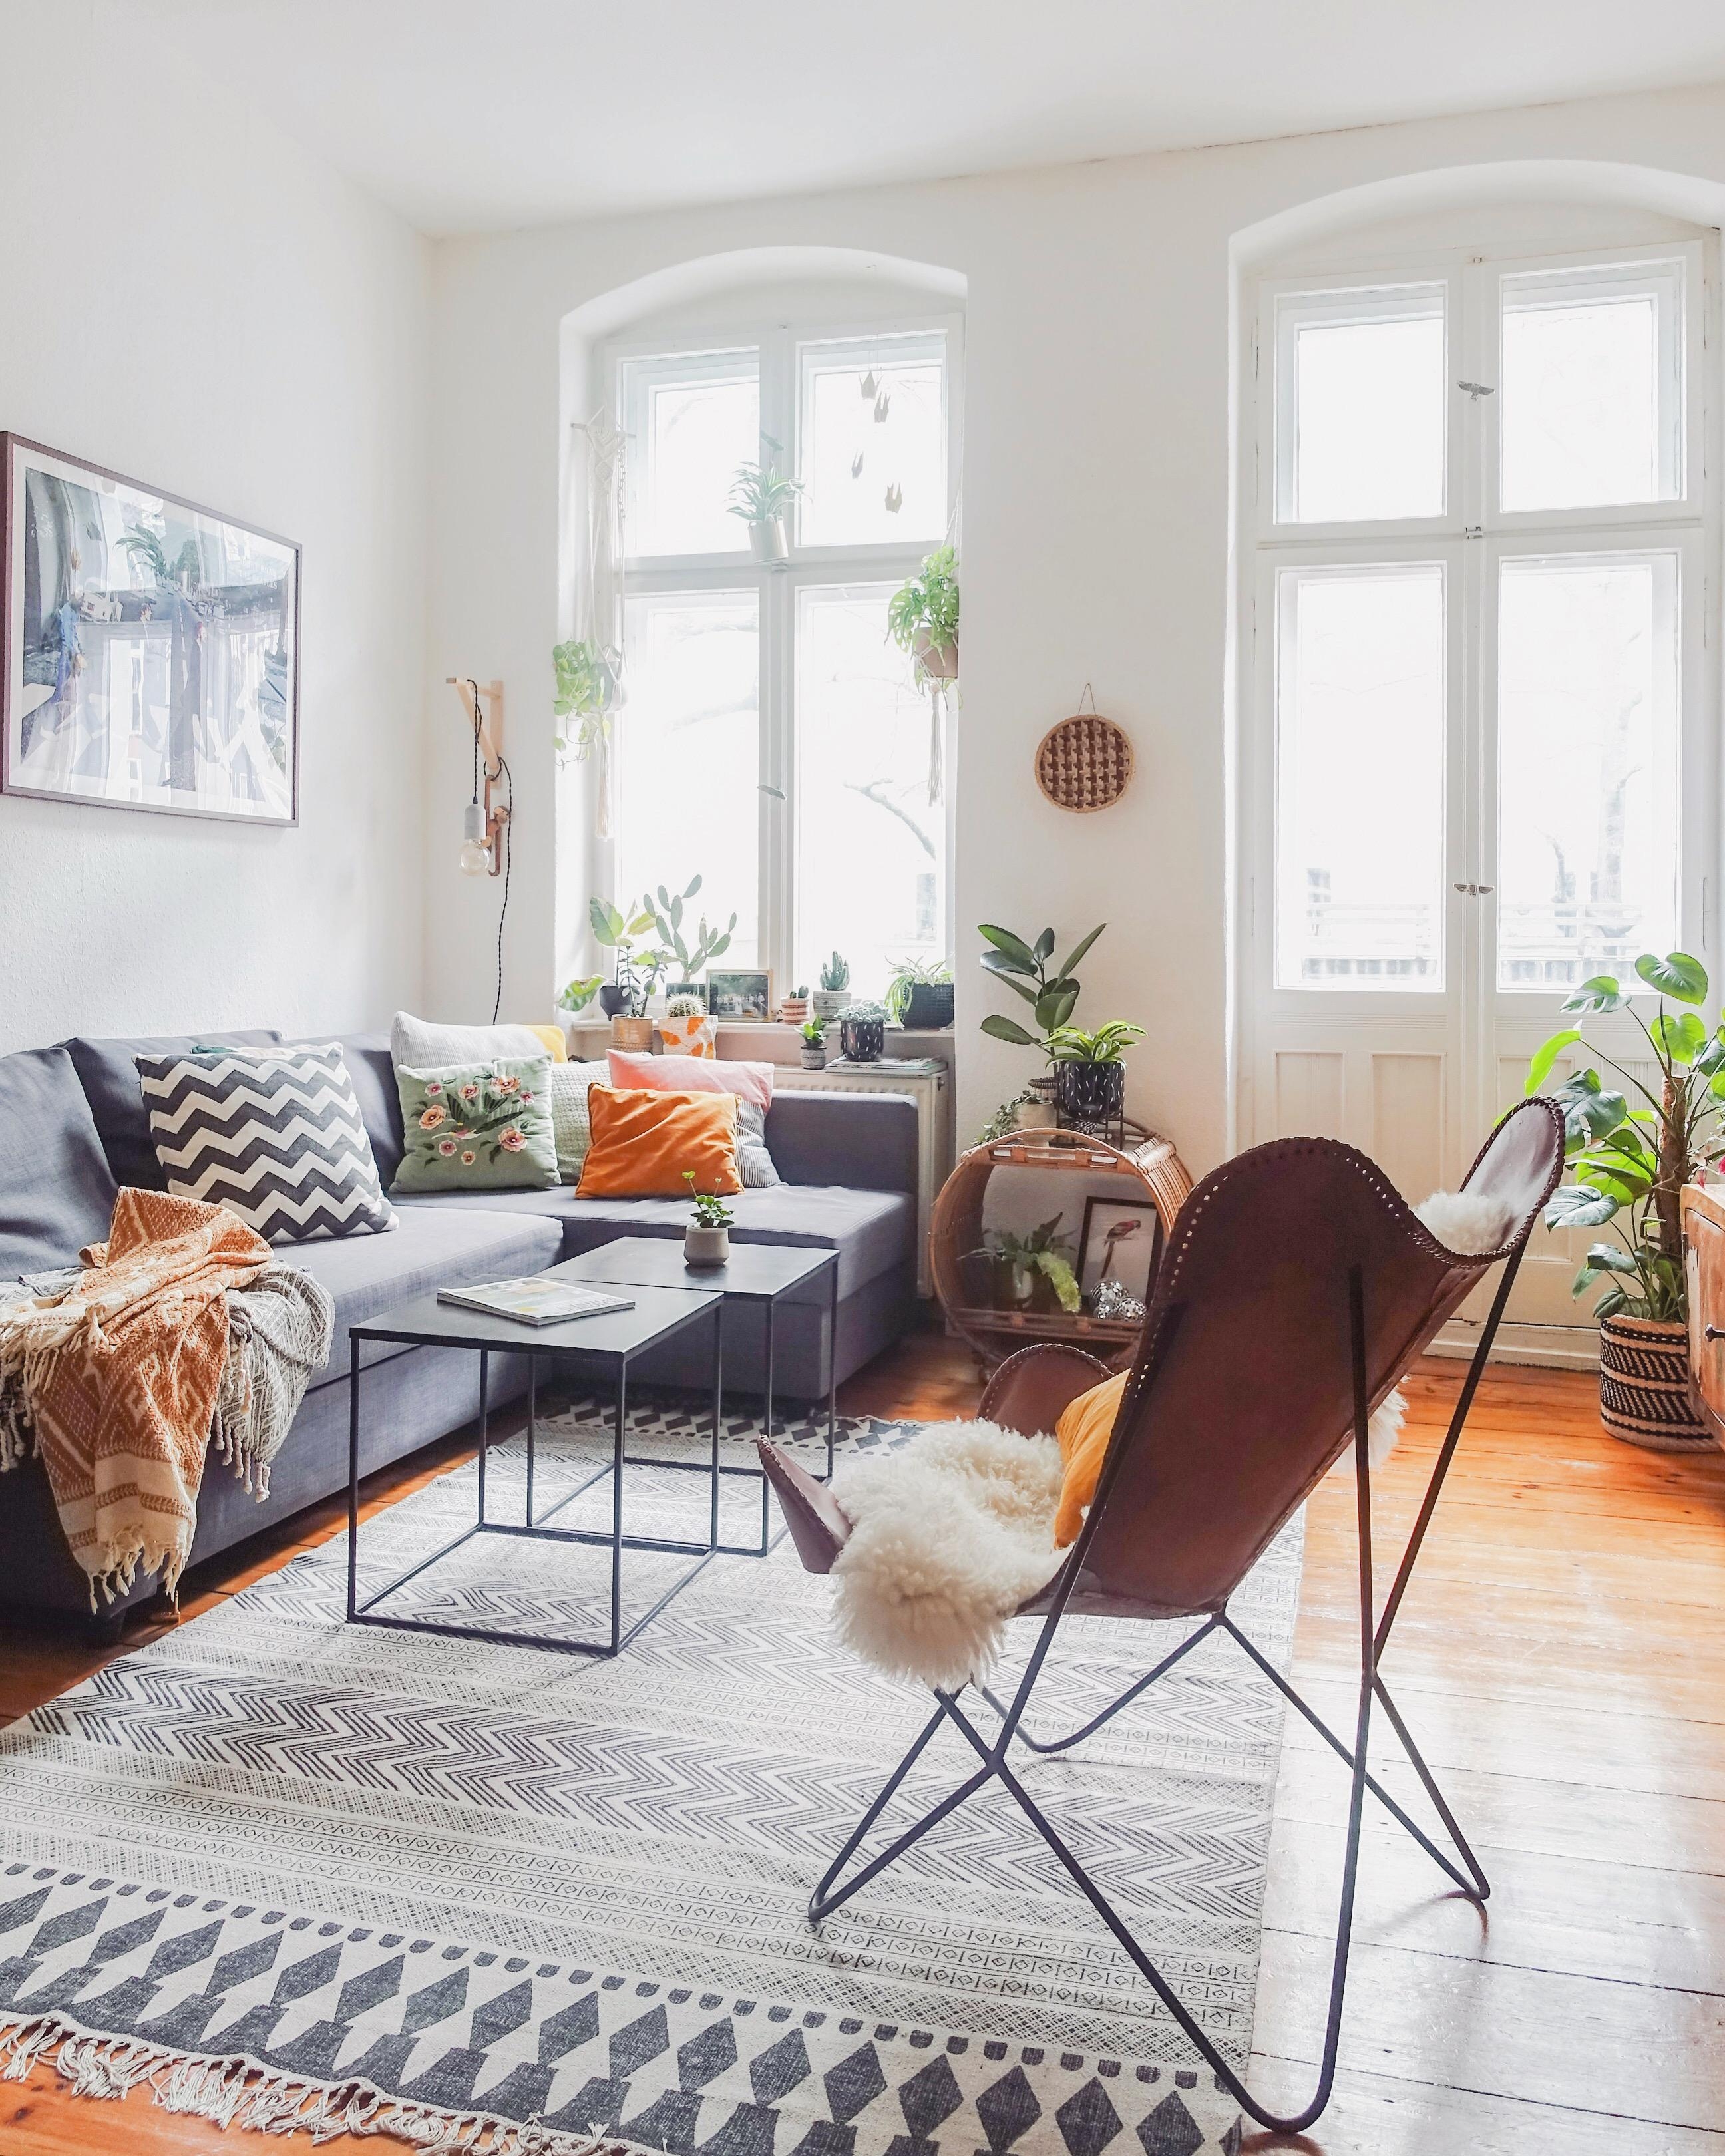 Couchgeflüster #livingroom #cozy #interior #pflanzenliebe